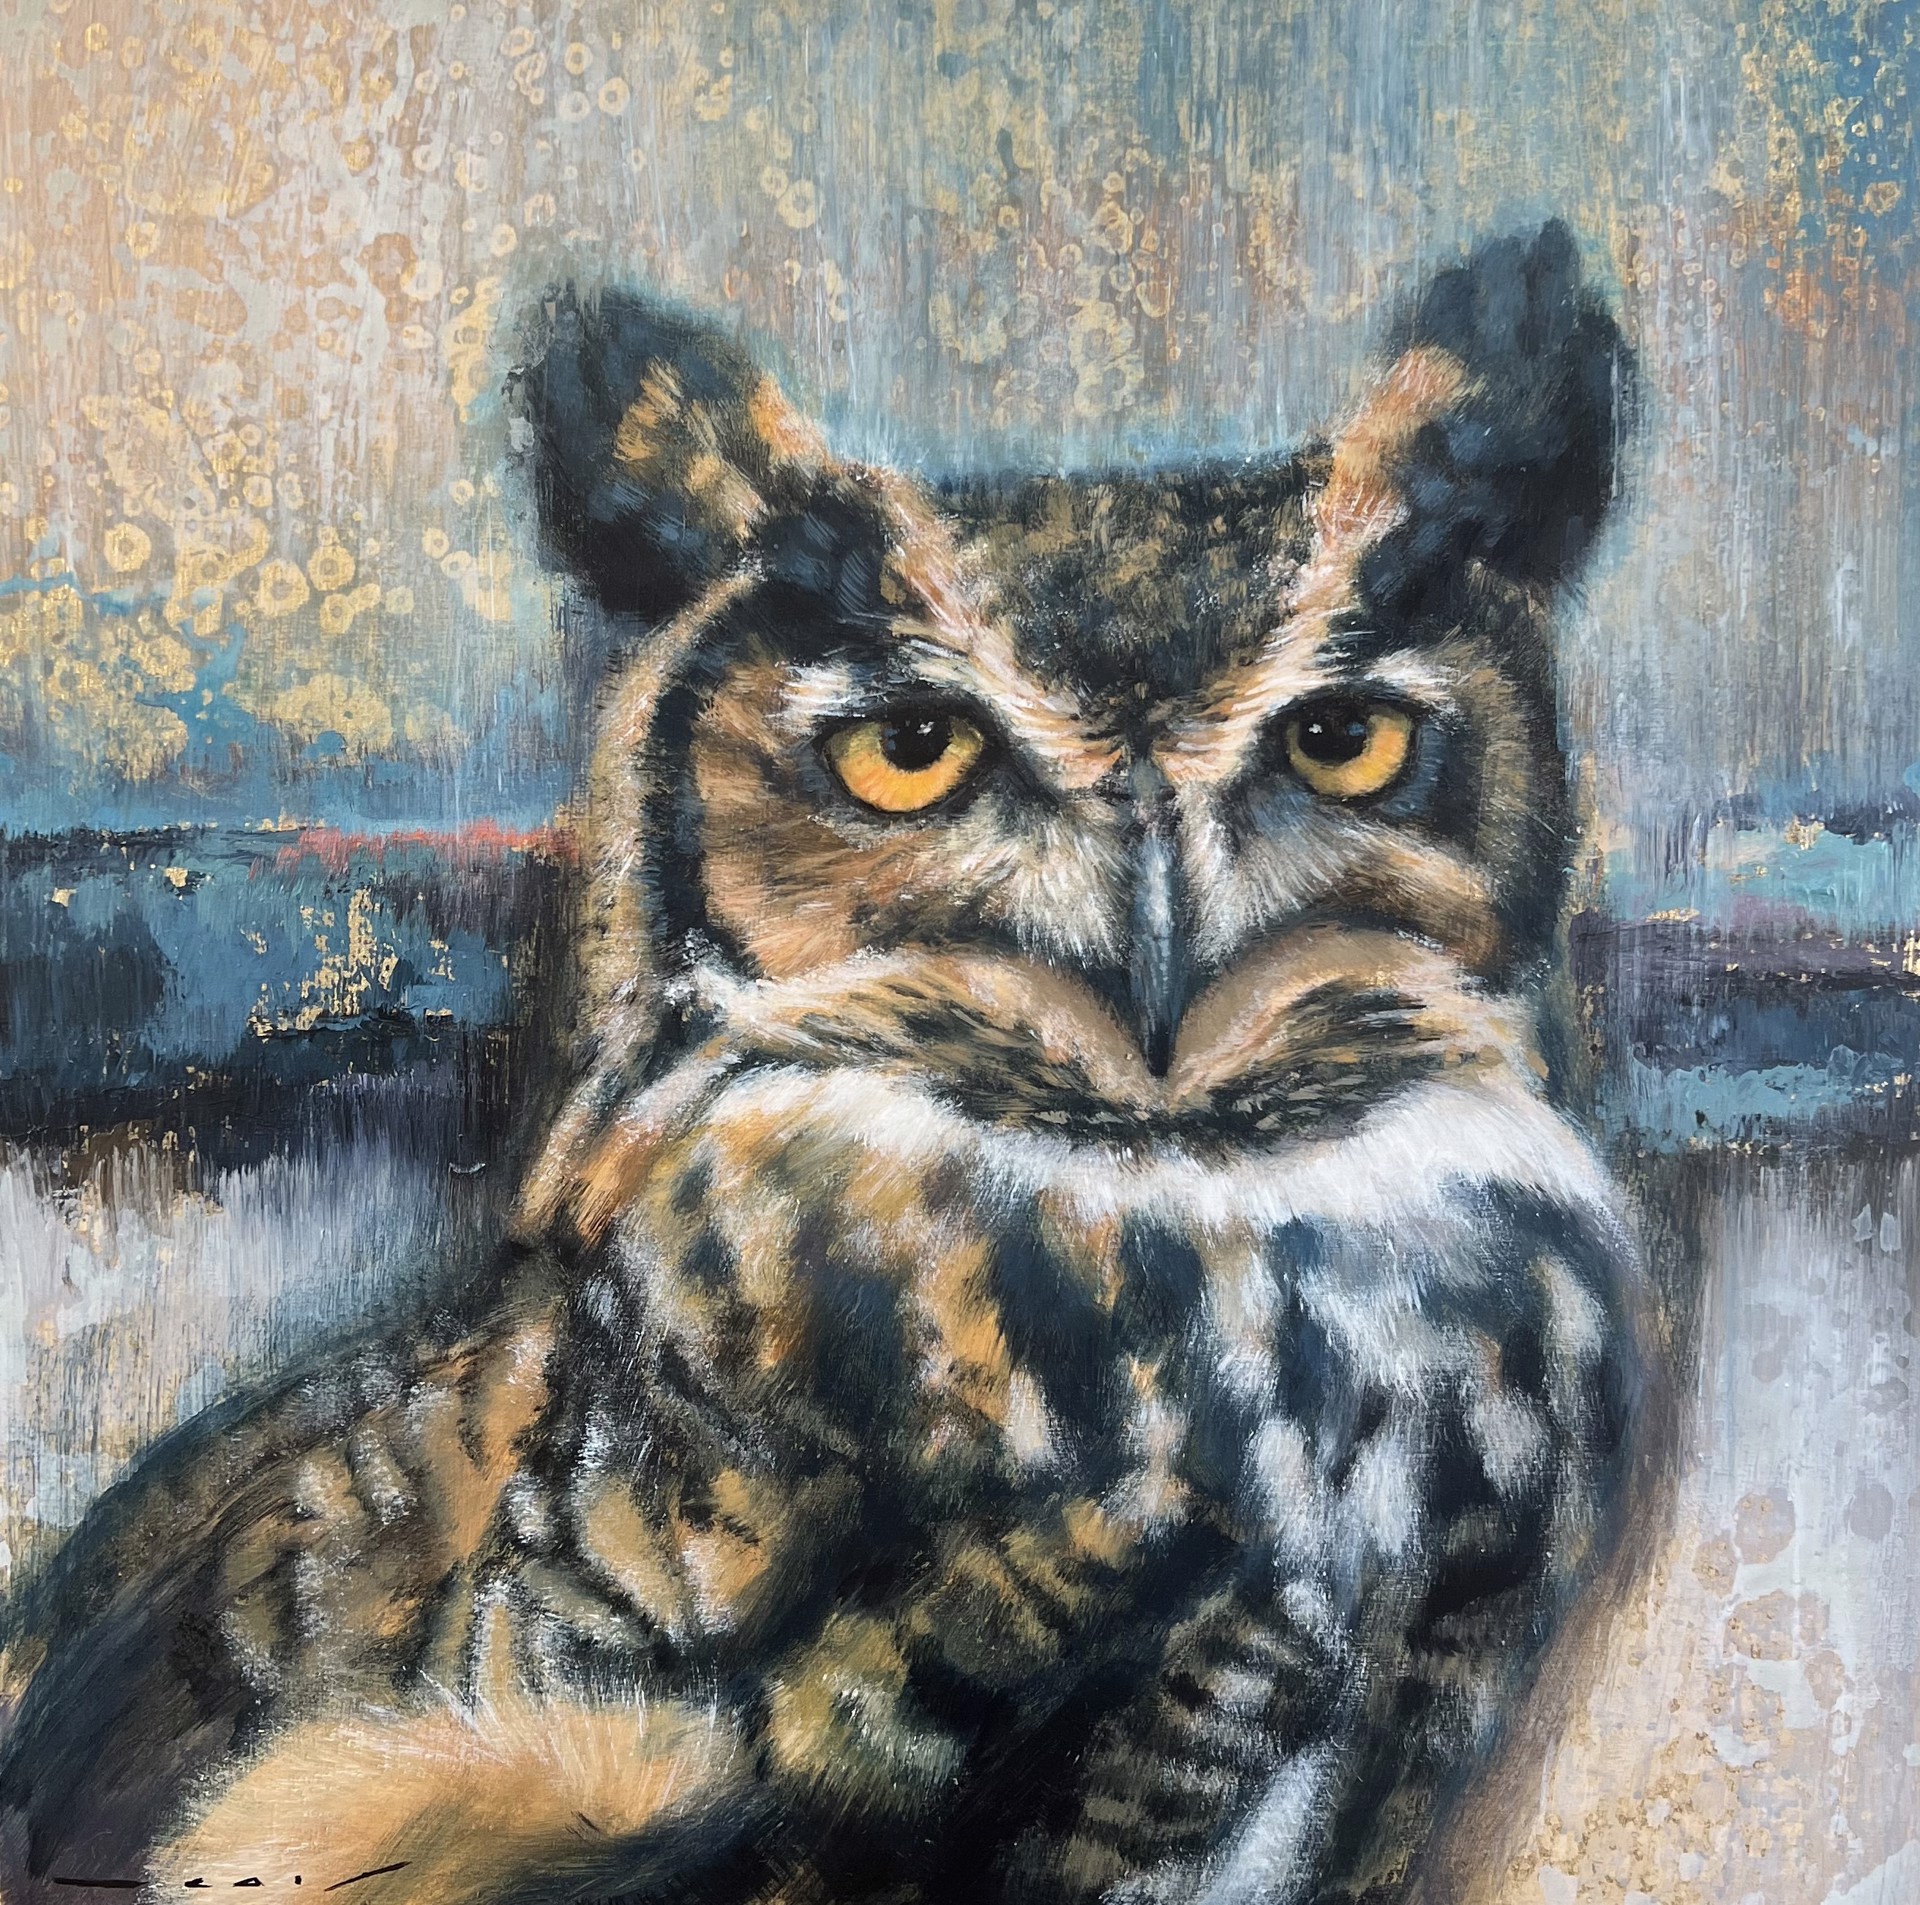 Mr. Owl by Nealy Riley